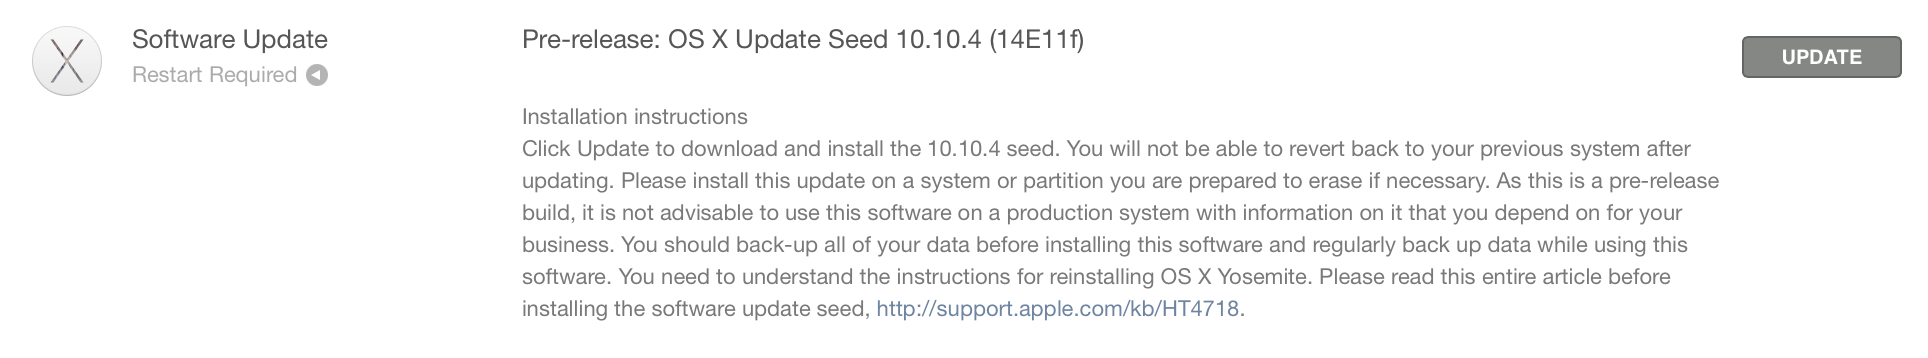 OS X 10.10.4 beta-versio